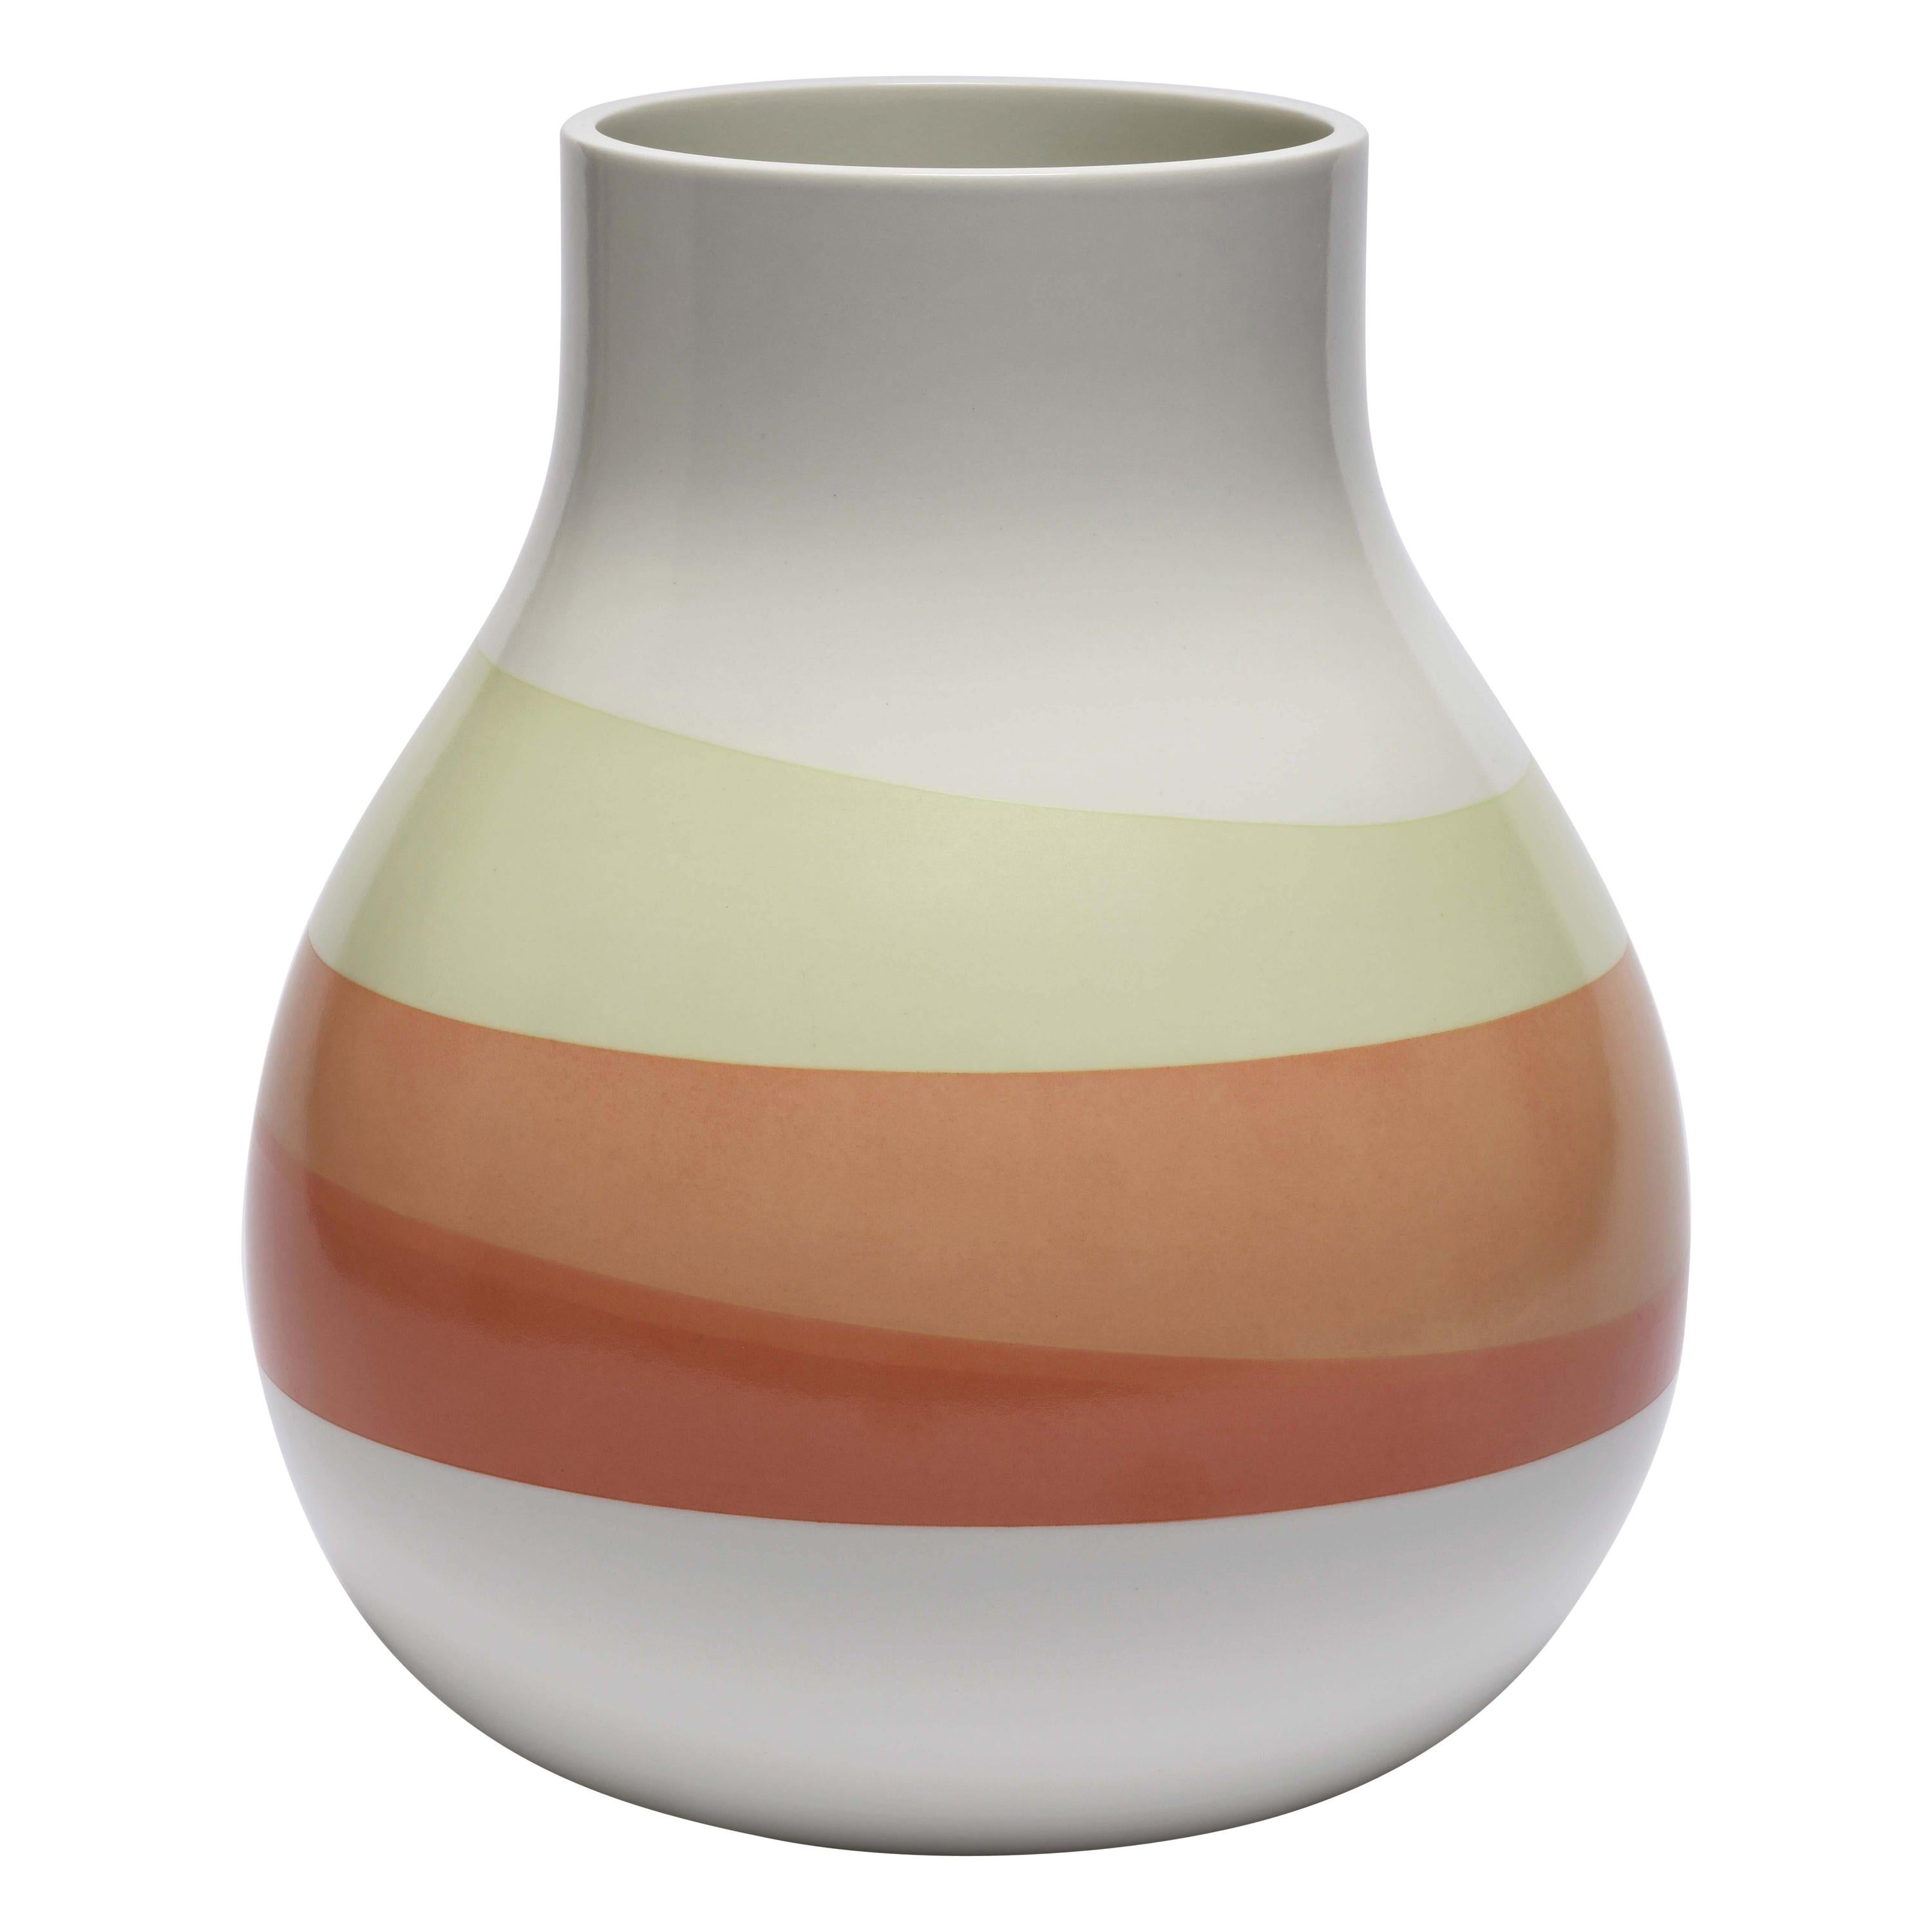 Scholten & Baijings 3.1 Vase in Porcelain by Manufacture Nationale de Sèvres For Sale